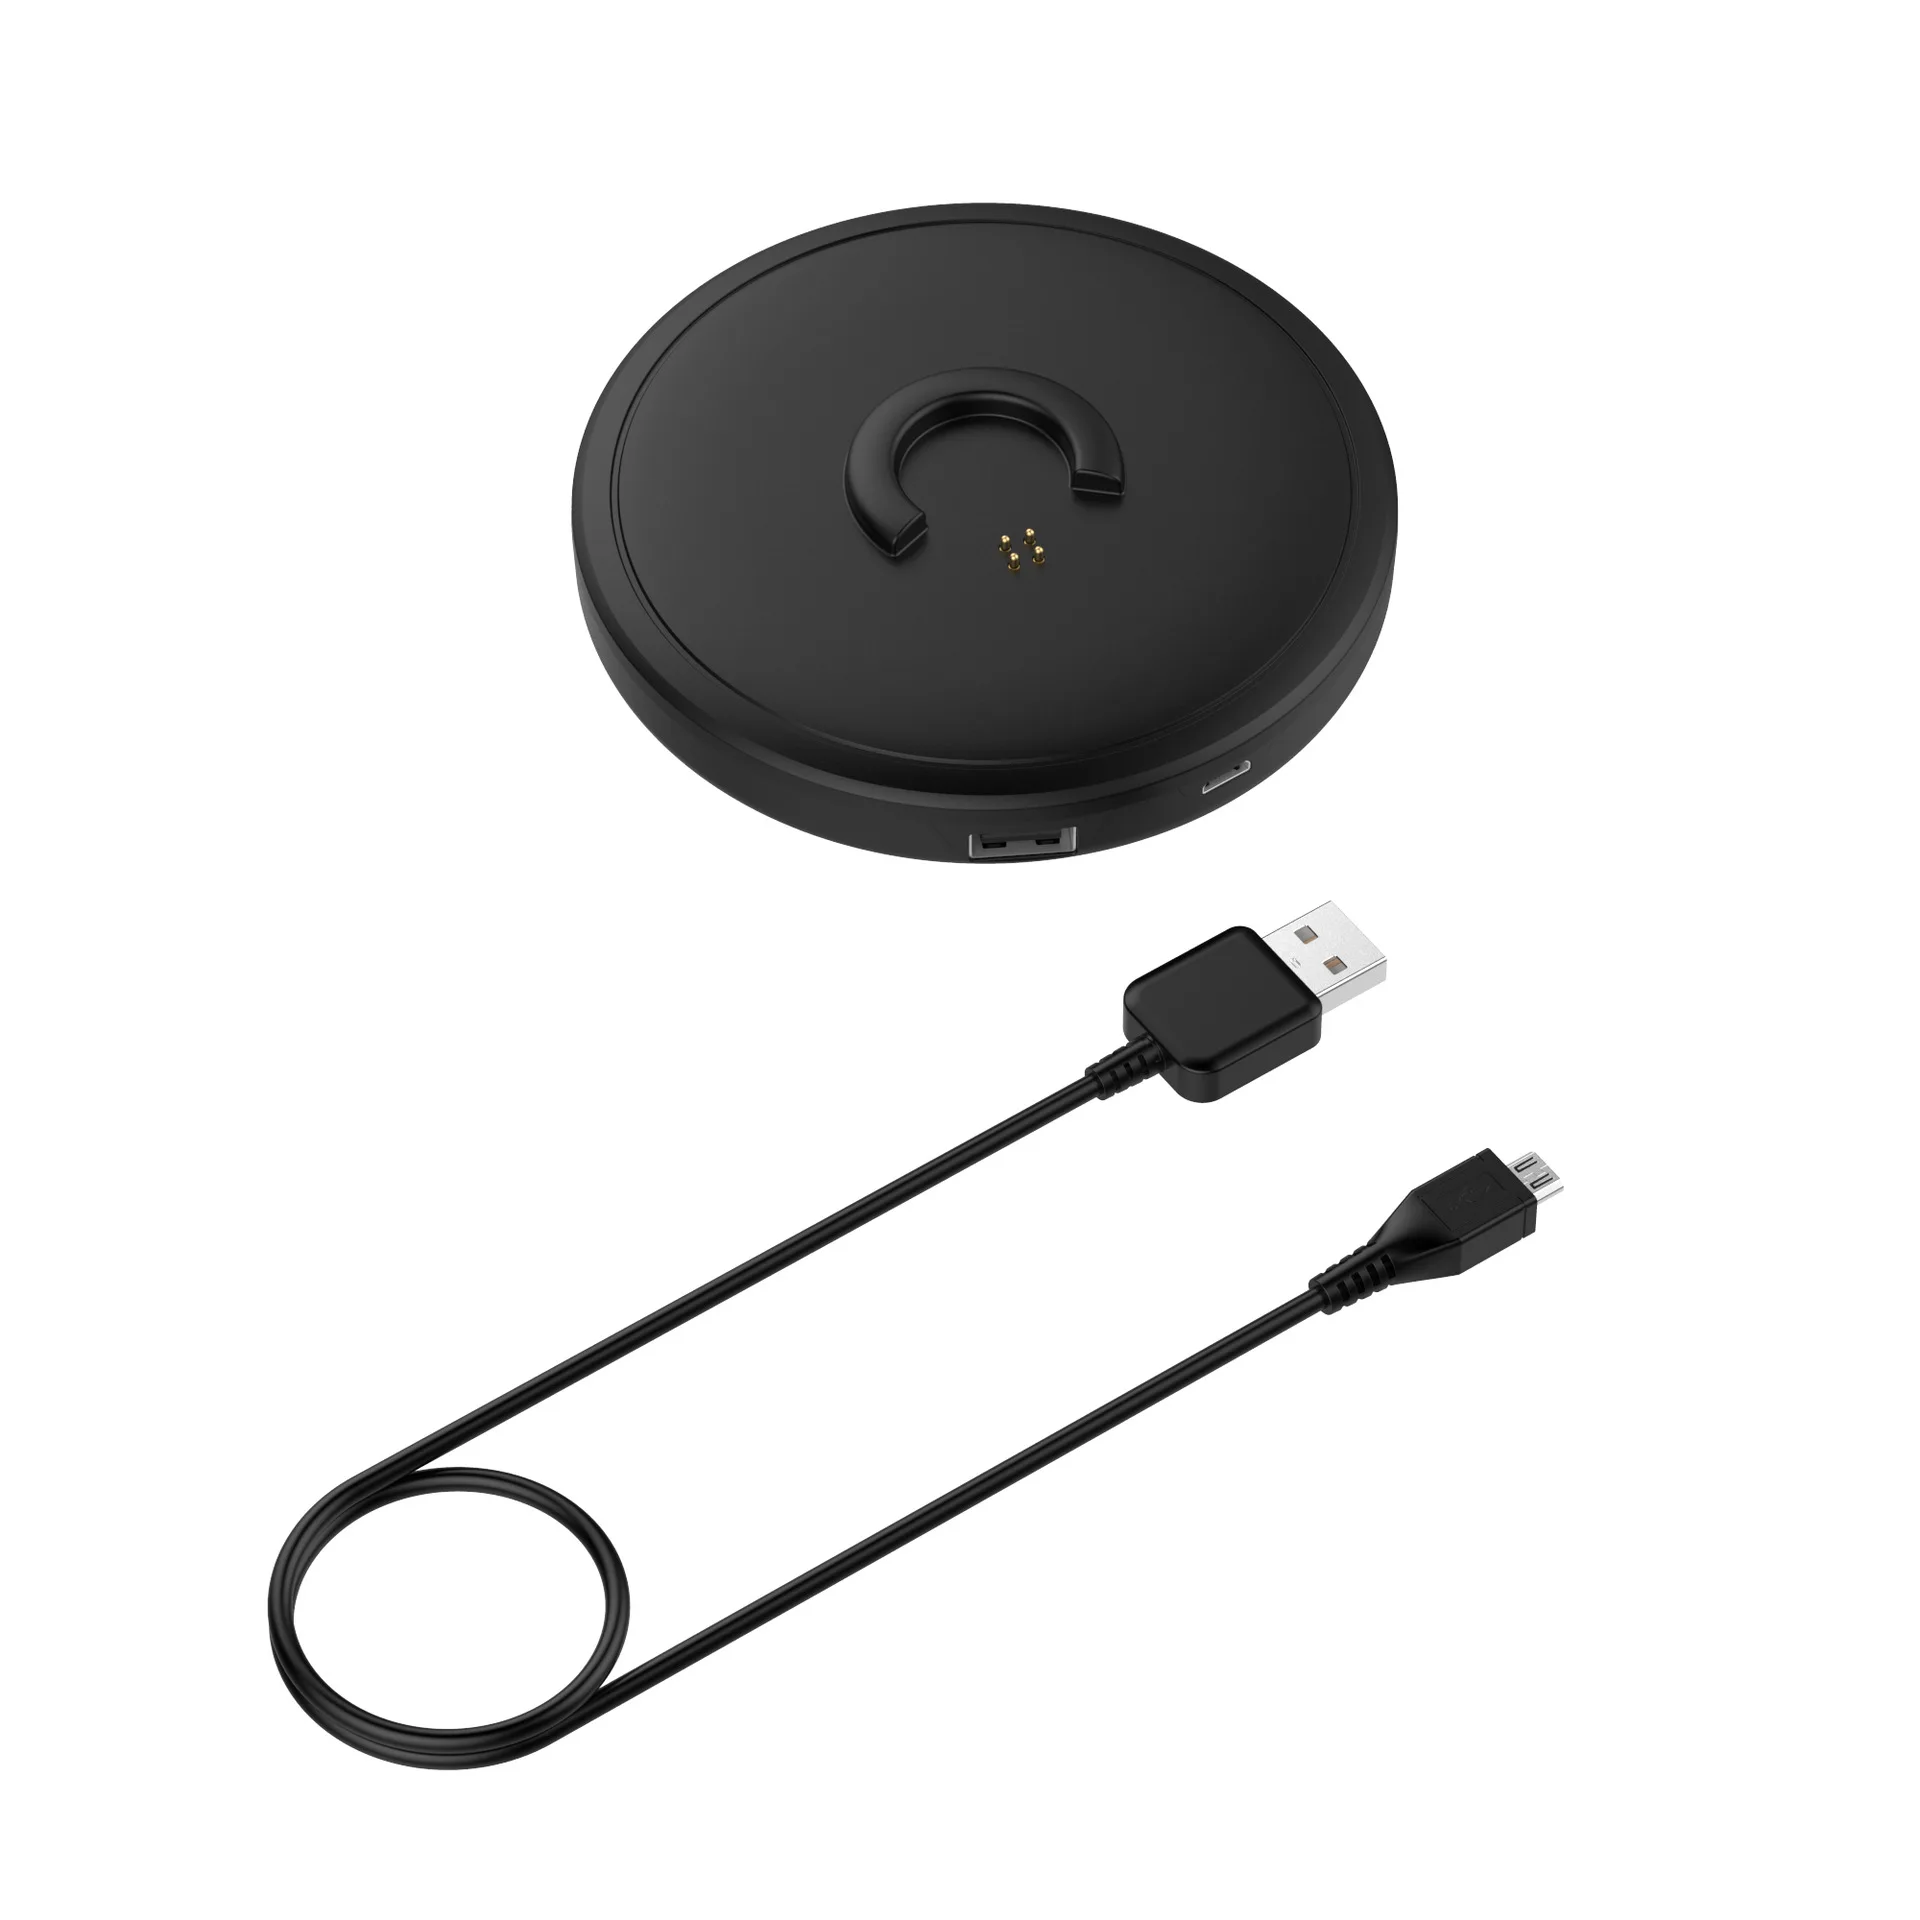 

ABS Desktop Charging Stand Cradle Charger Dock Station Pad For Bose Soundlink Revolve/Revolve+ Bluetooth Speaker Accessories